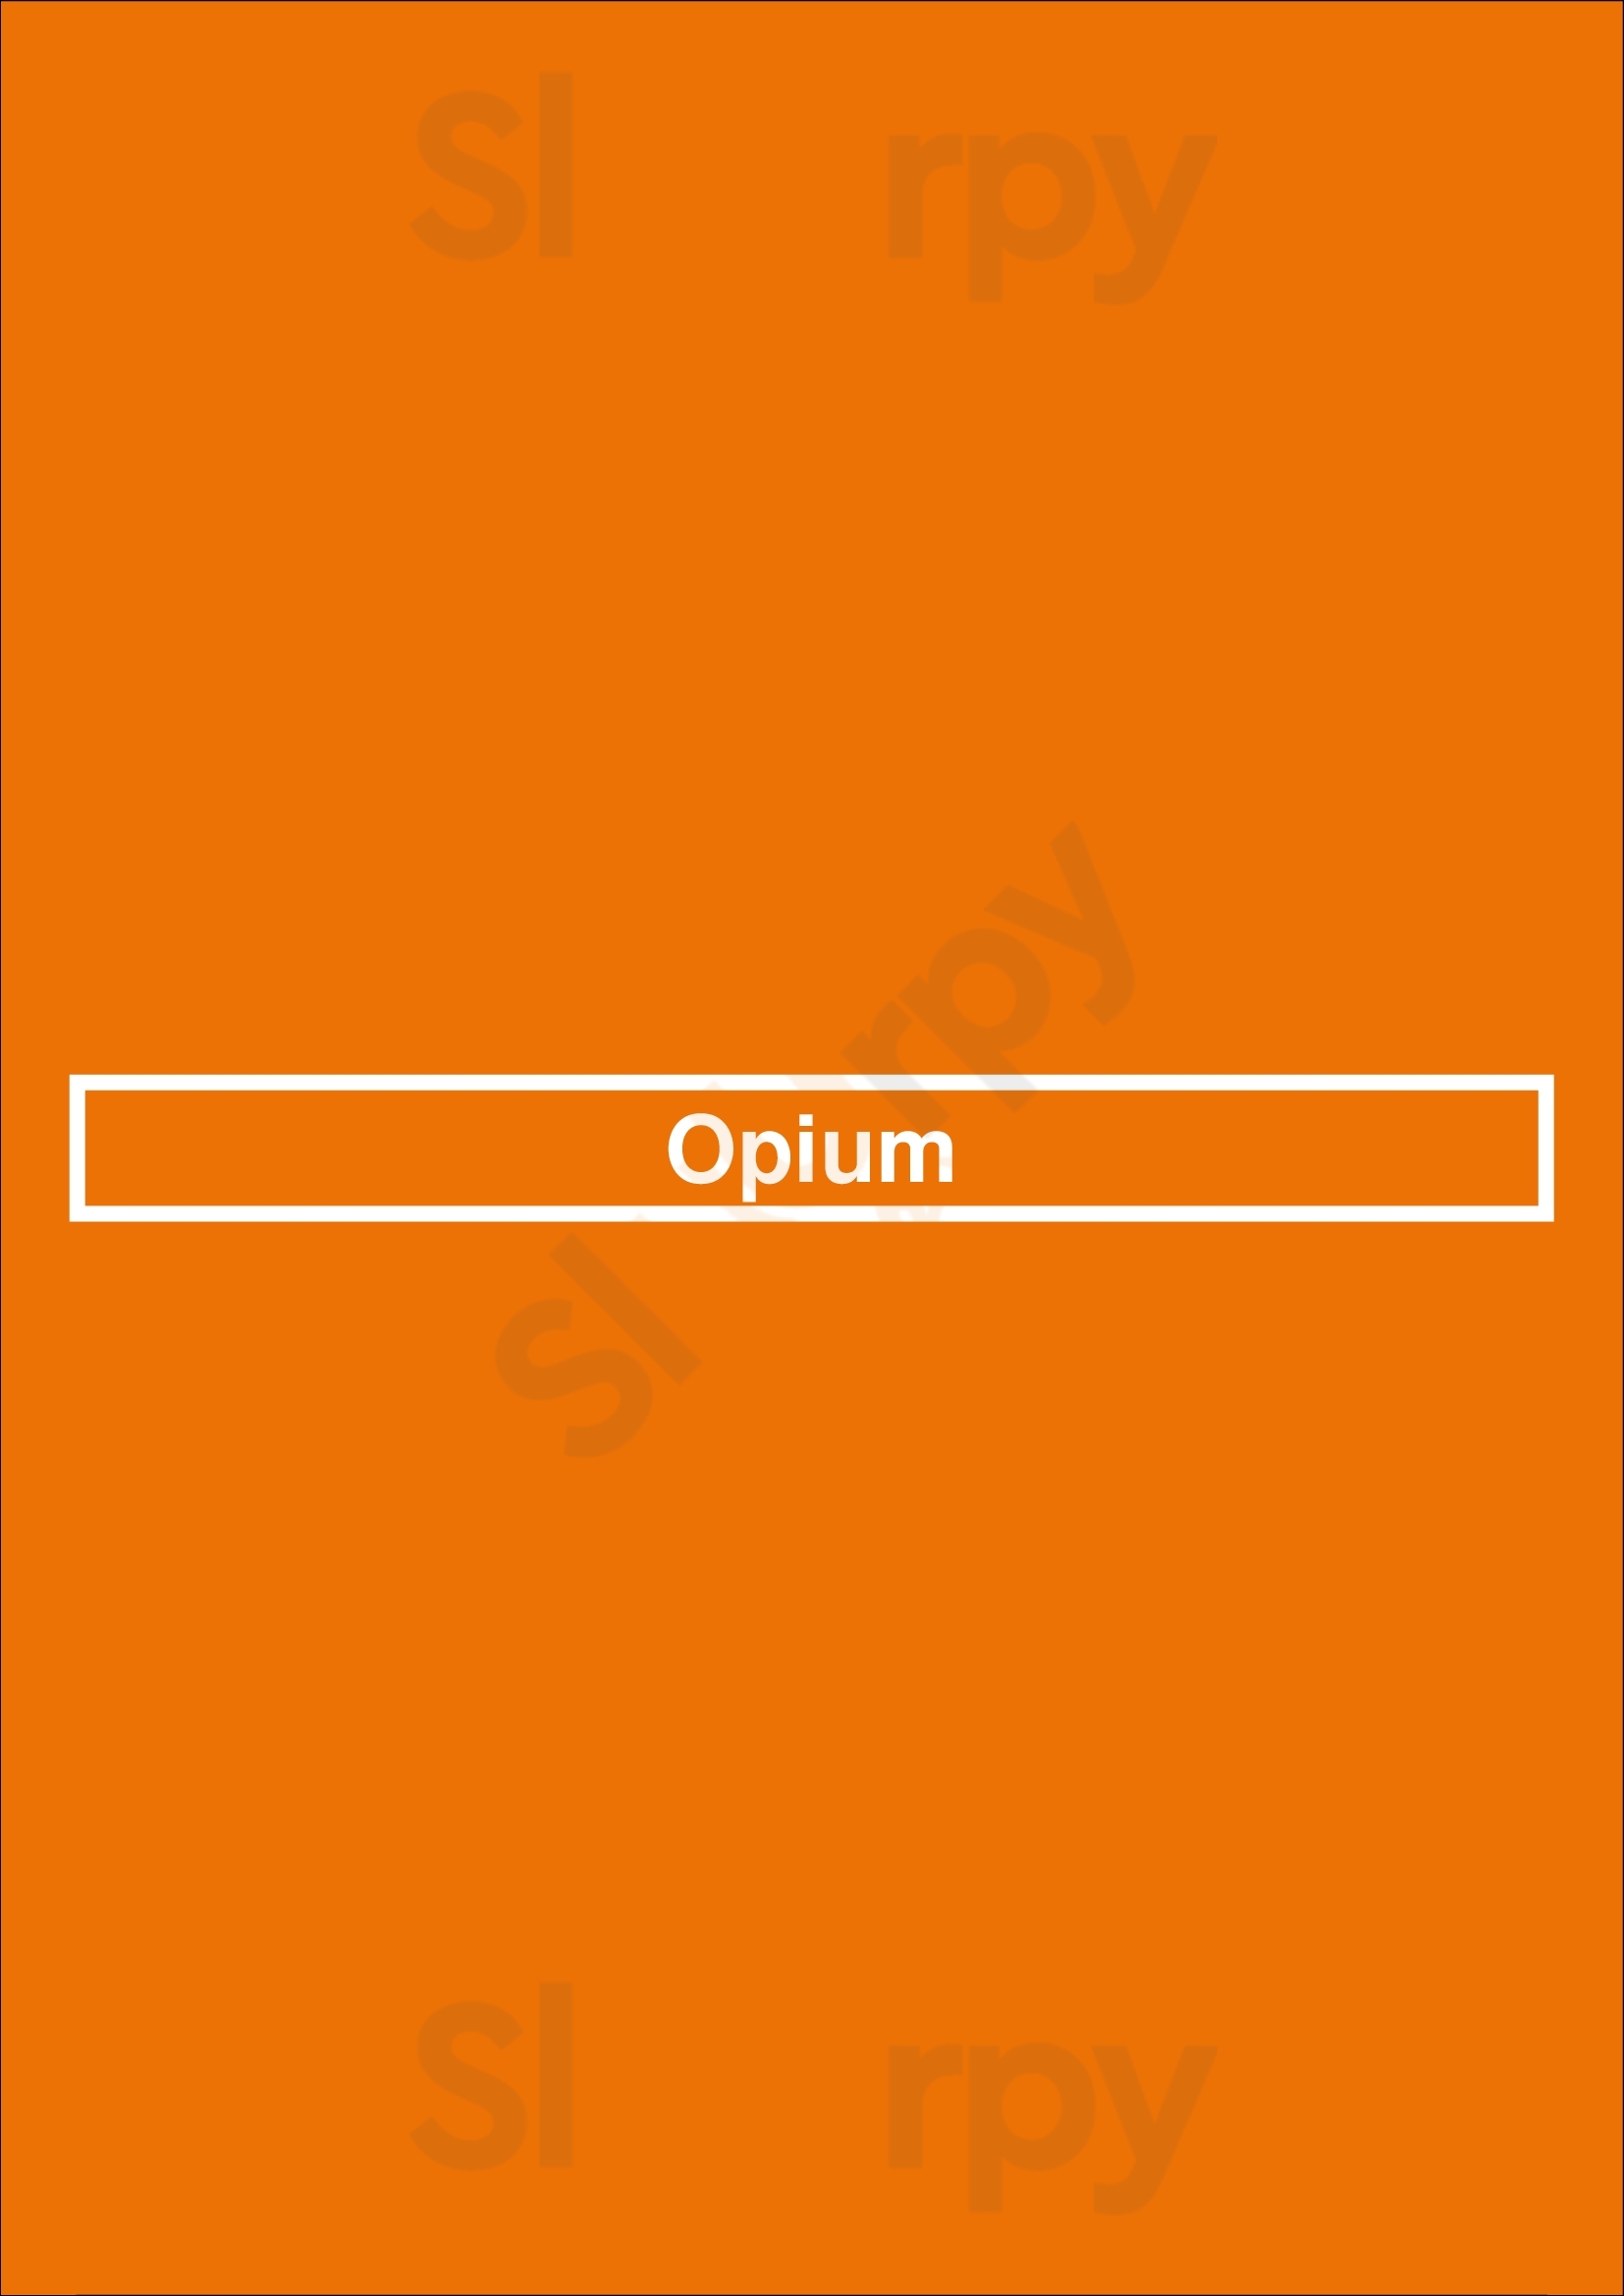 Opium Dublin Menu - 1